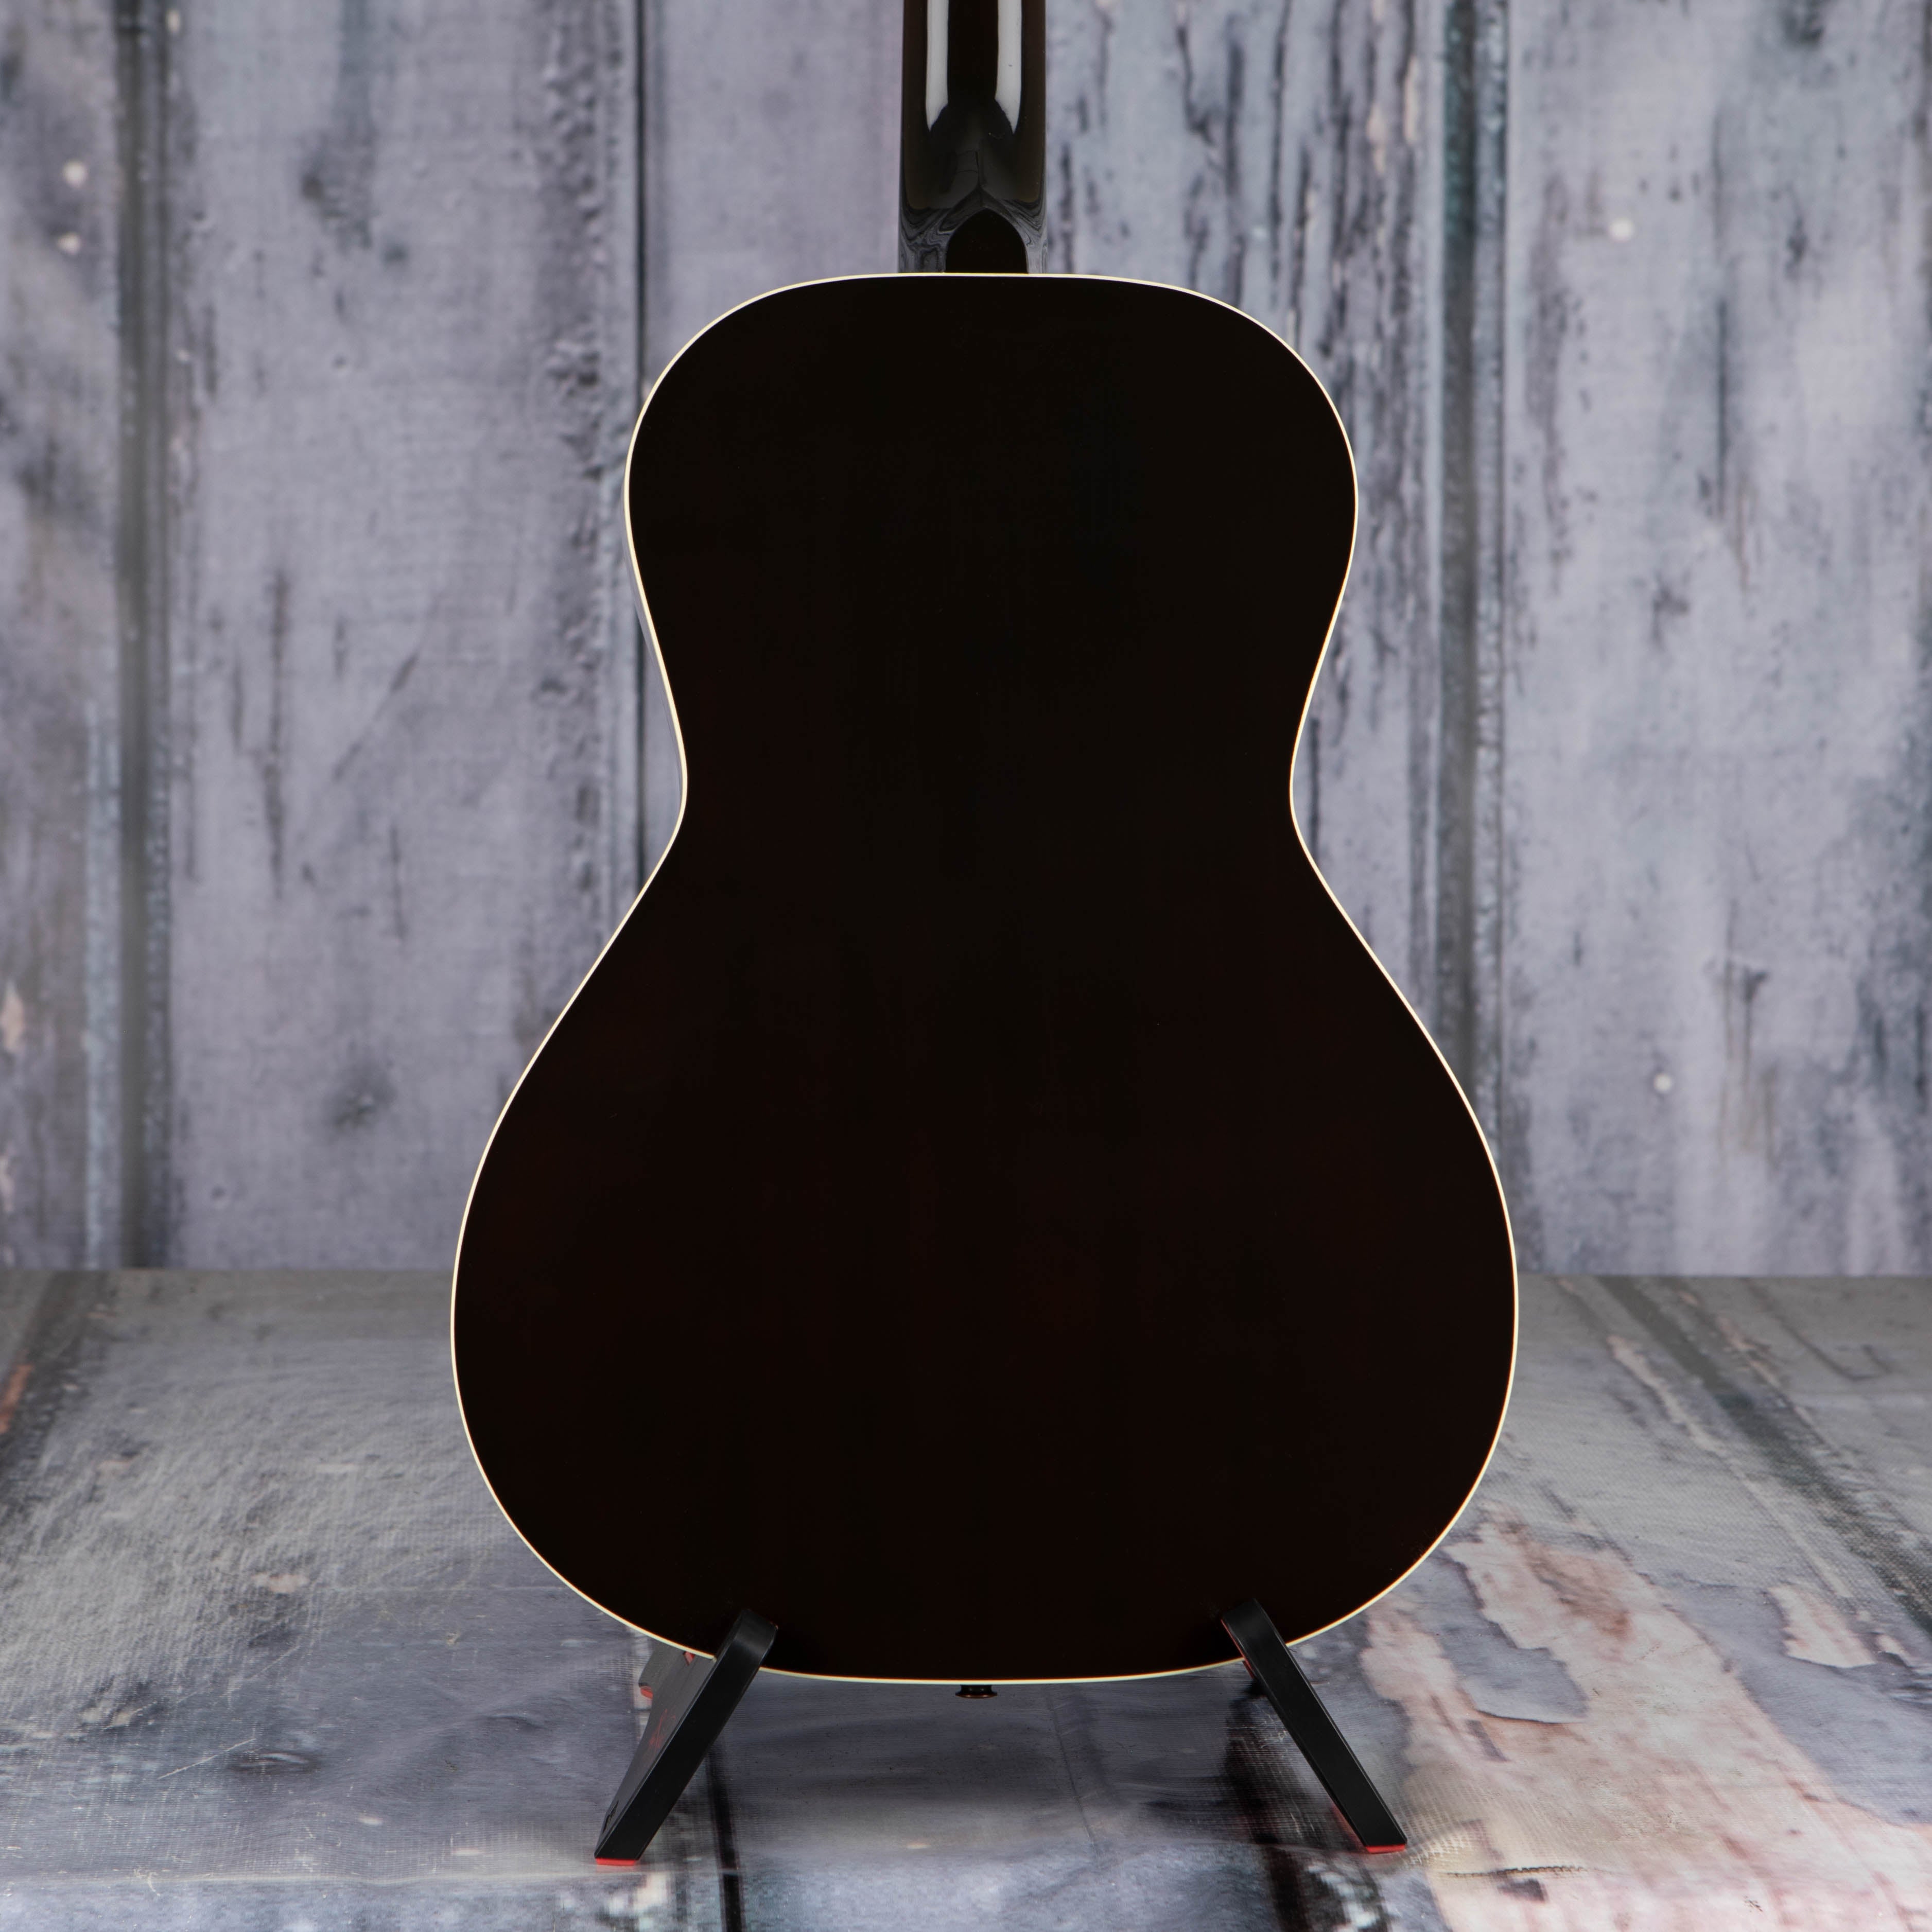 Gibson L-00 Standard Acoustic/Electric Guitar, Vintage Sunburst, back closeup